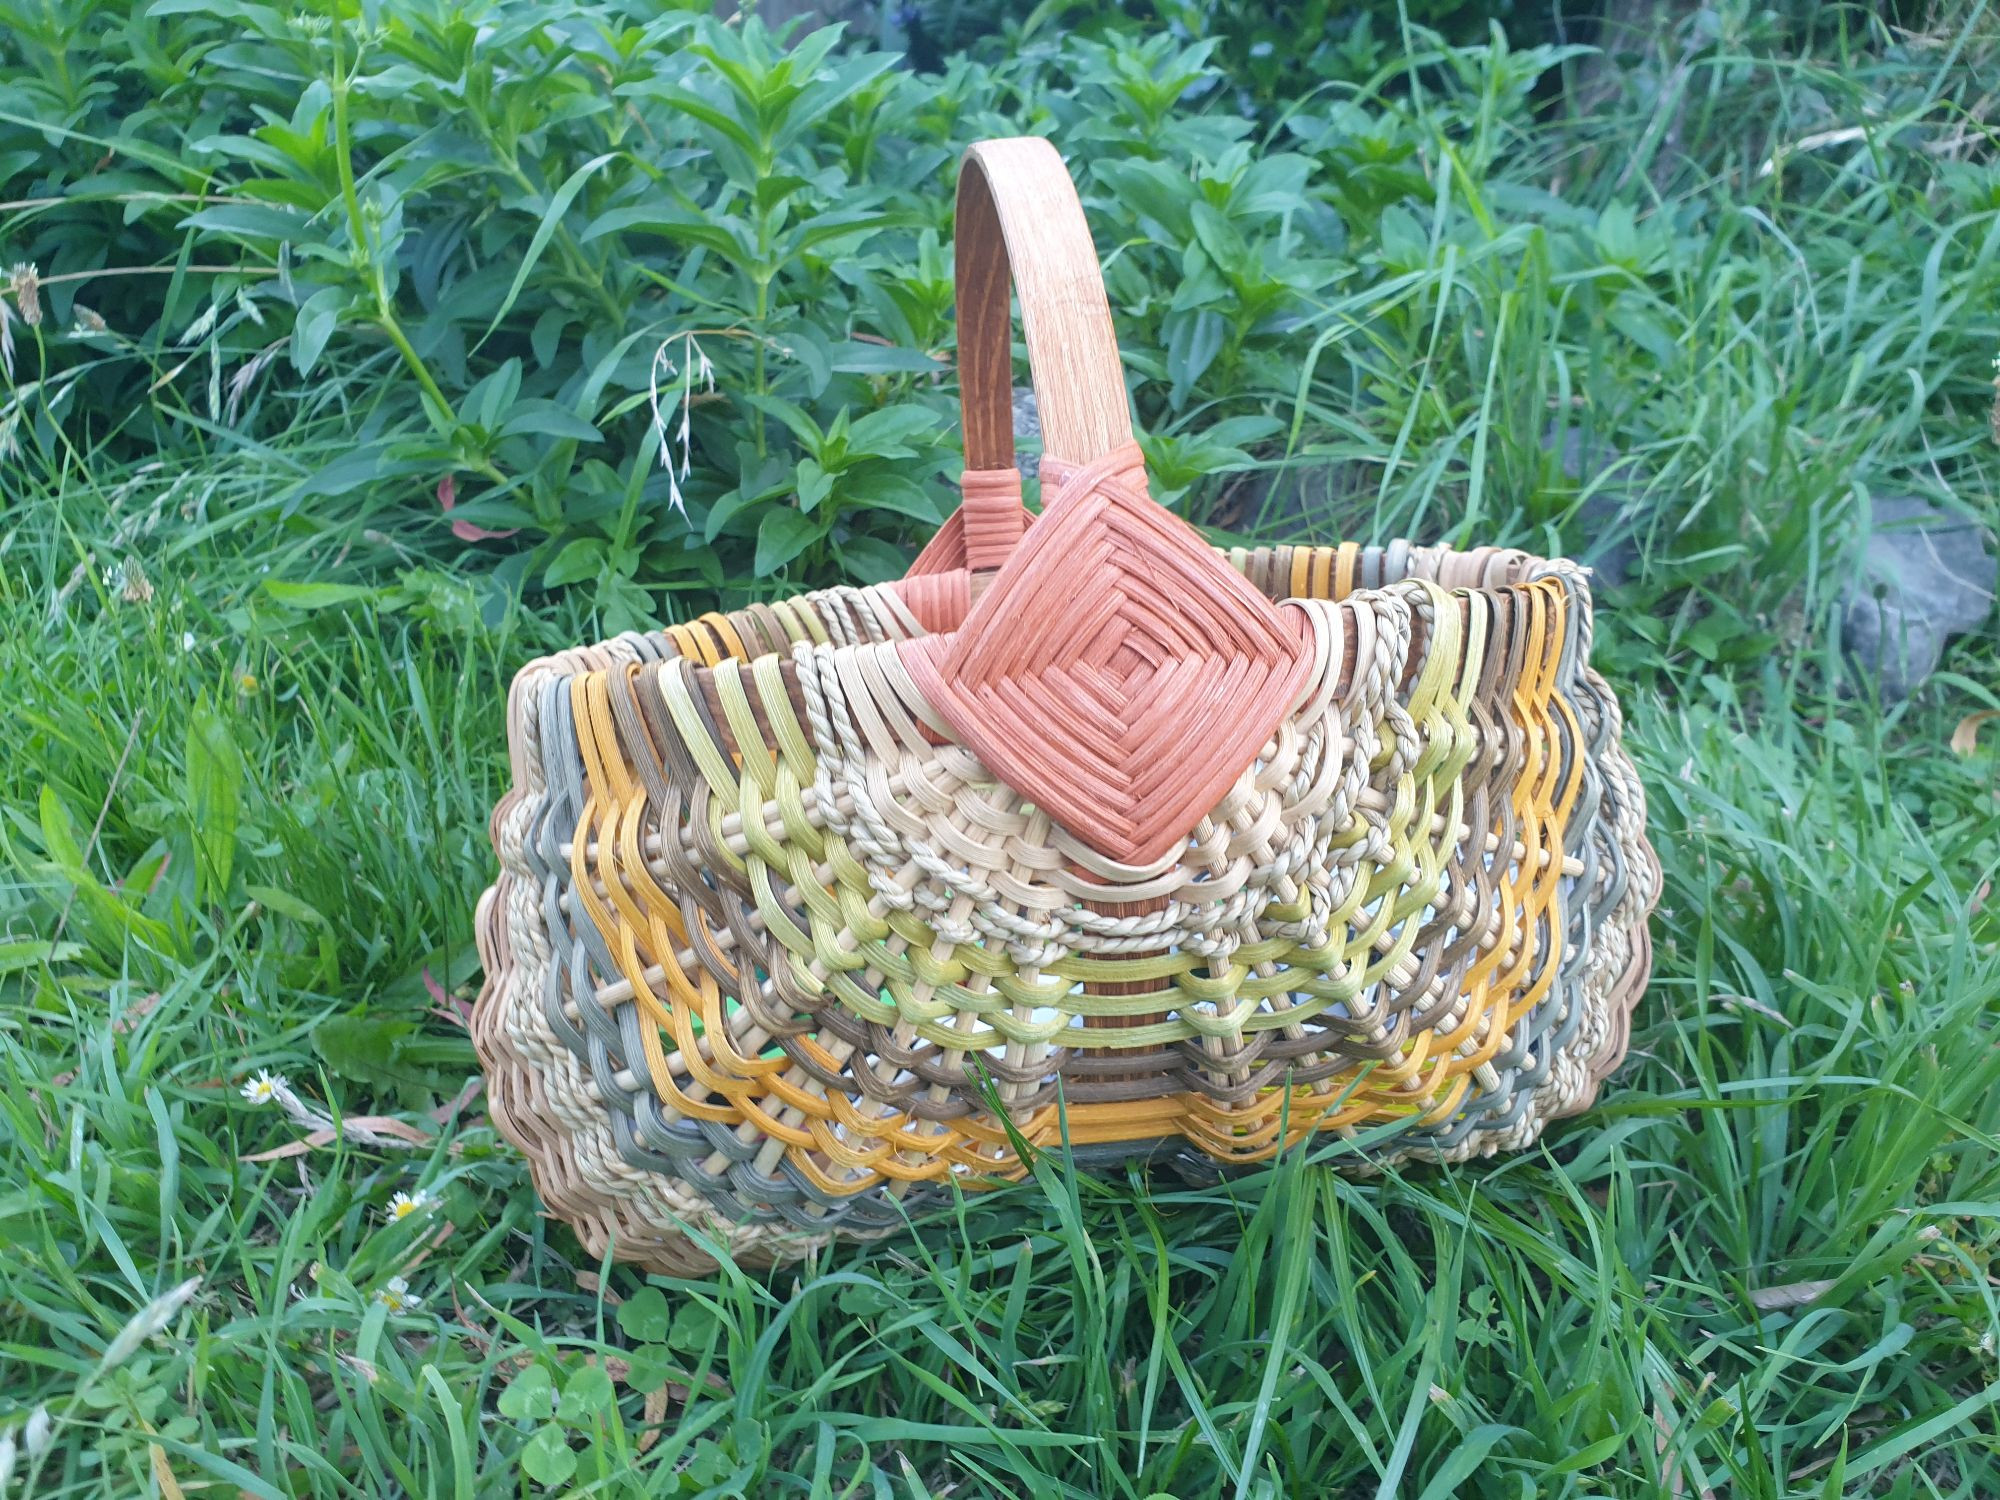 Basket Weaving Workshop - Make a Ribbed Basket